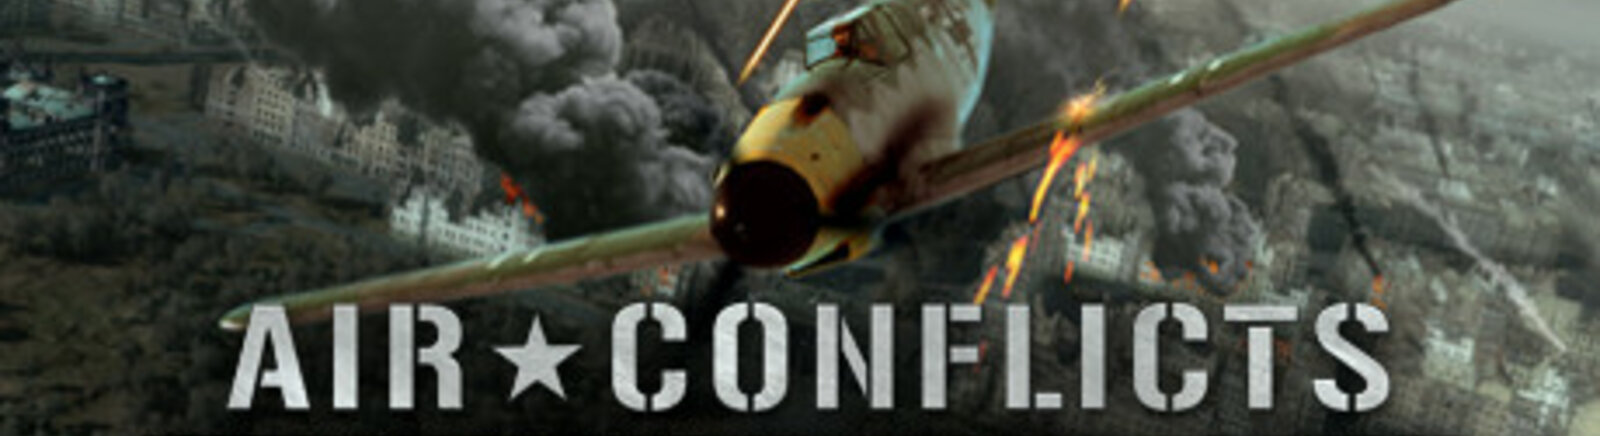 Дата выхода Air Conflicts: Secret Wars  на PC, PS4 и PS3 в России и во всем мире